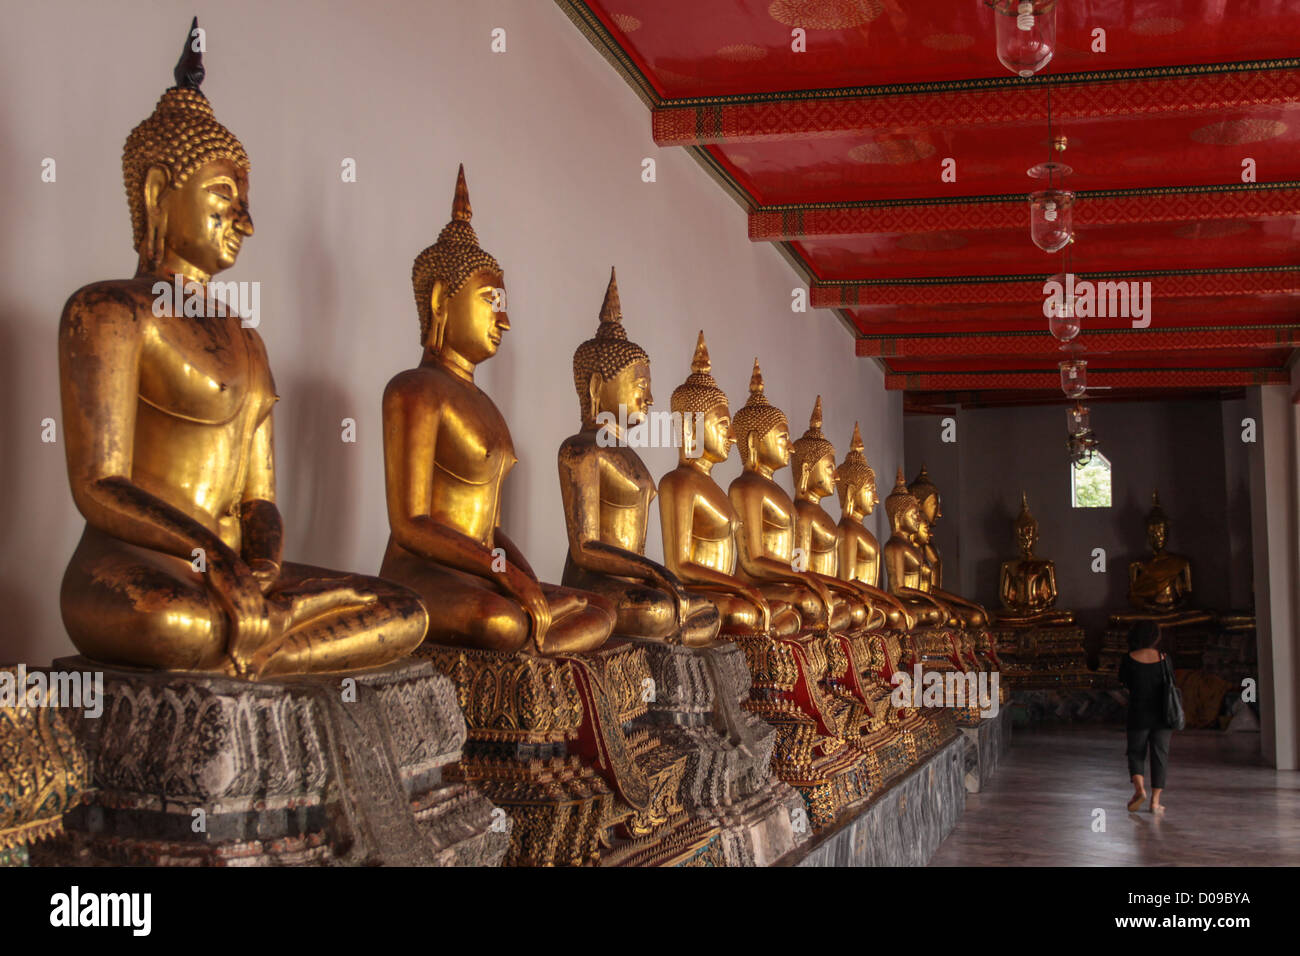 Les statues de Bouddha à l'INTÉRIEUR DE LA QUEUE du temple de Wat Pho à BANGKOK,THAÏLANDE ASIE Banque D'Images